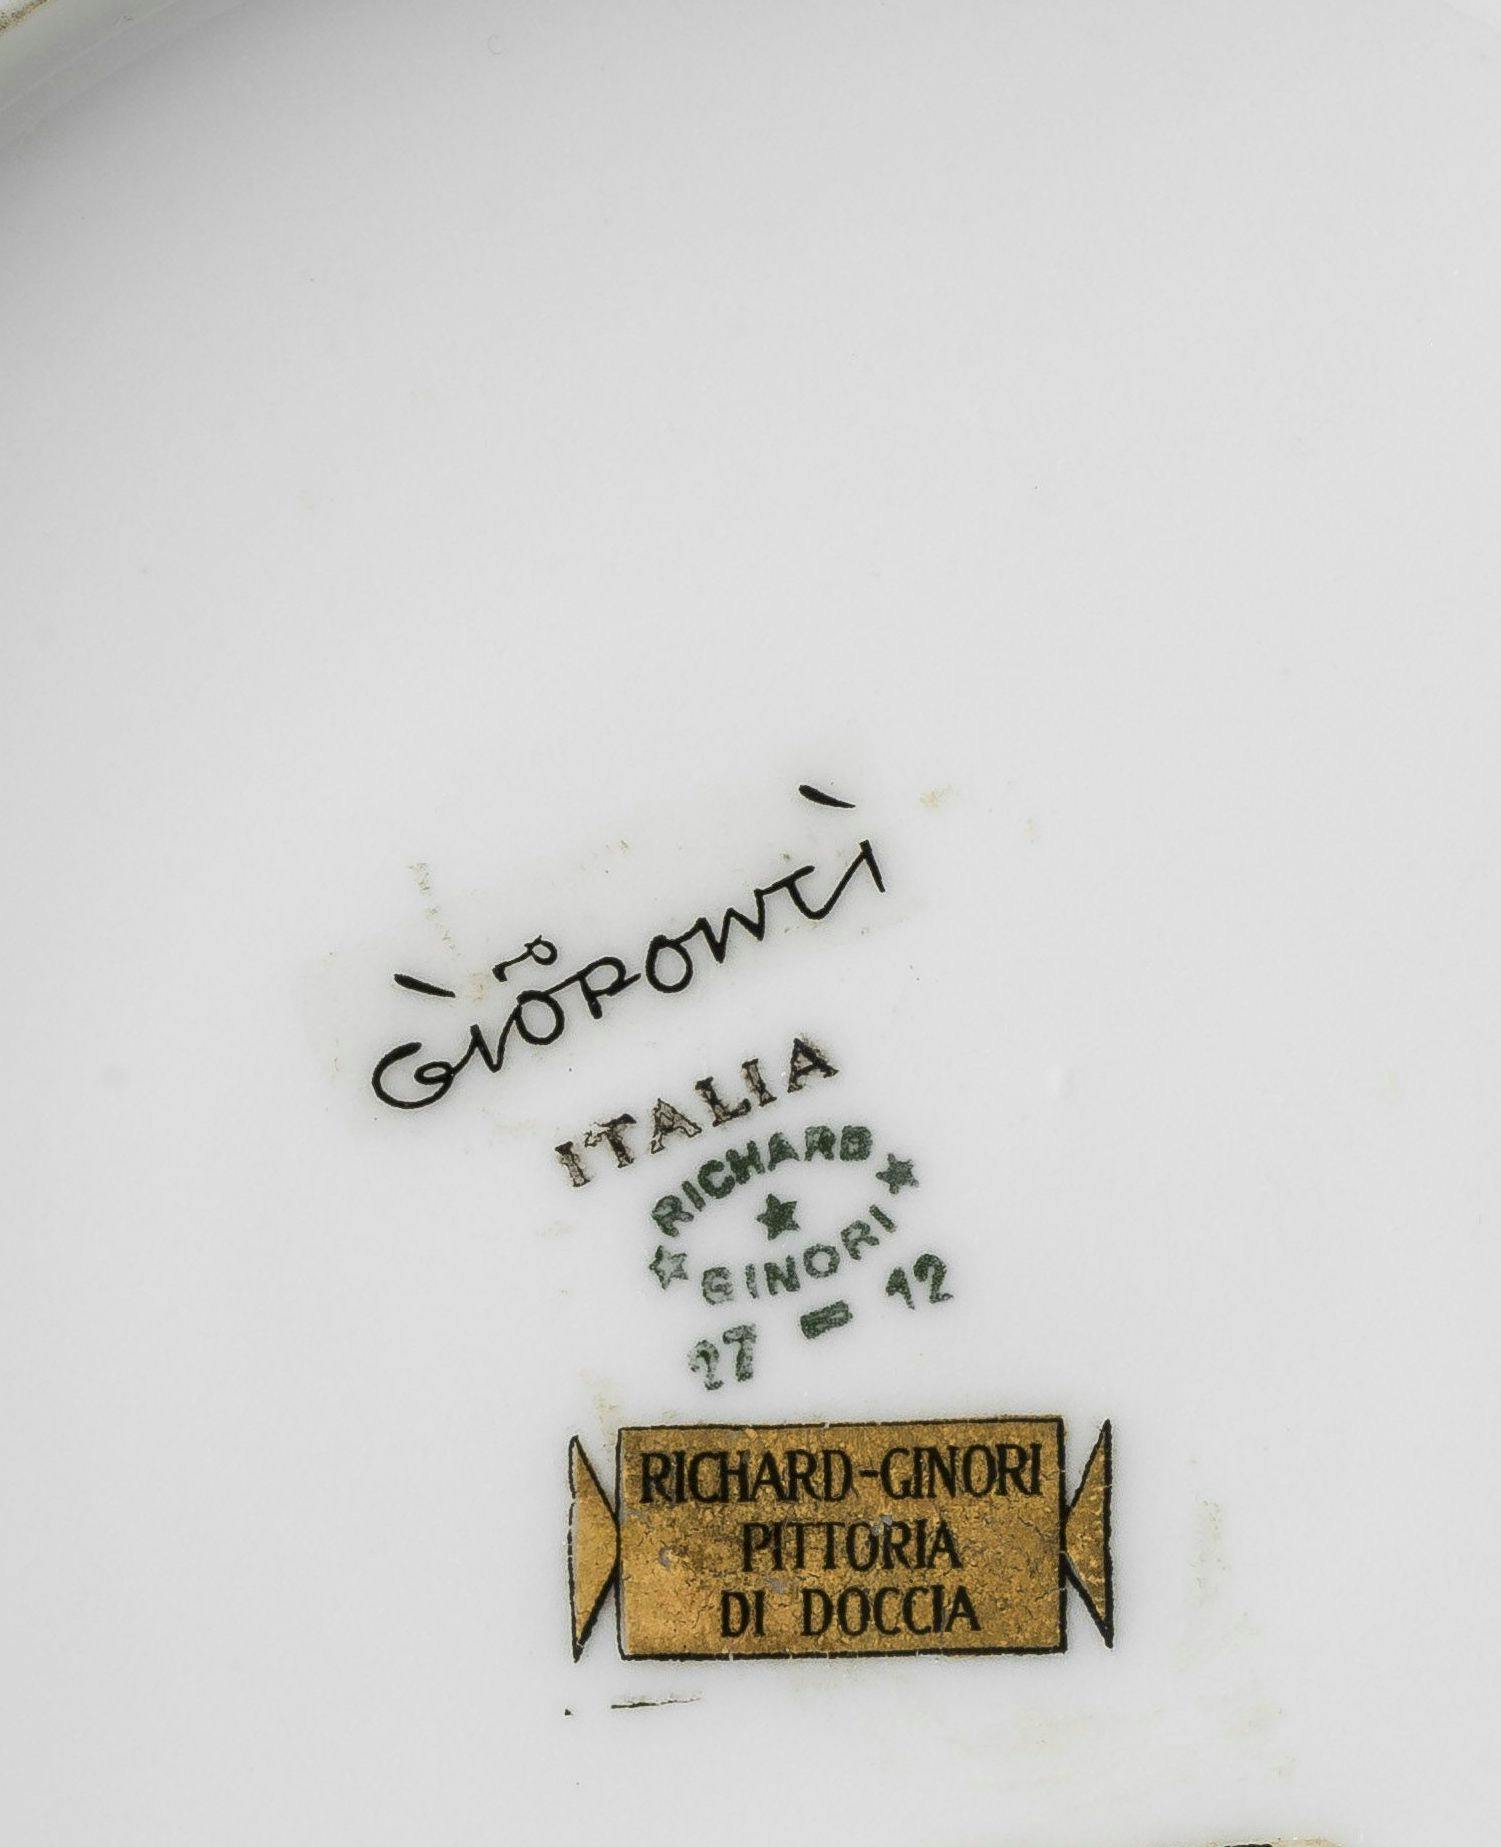 scritta Gio Ponti in nero, timbro Richard Ginori in verde, cartella dorata